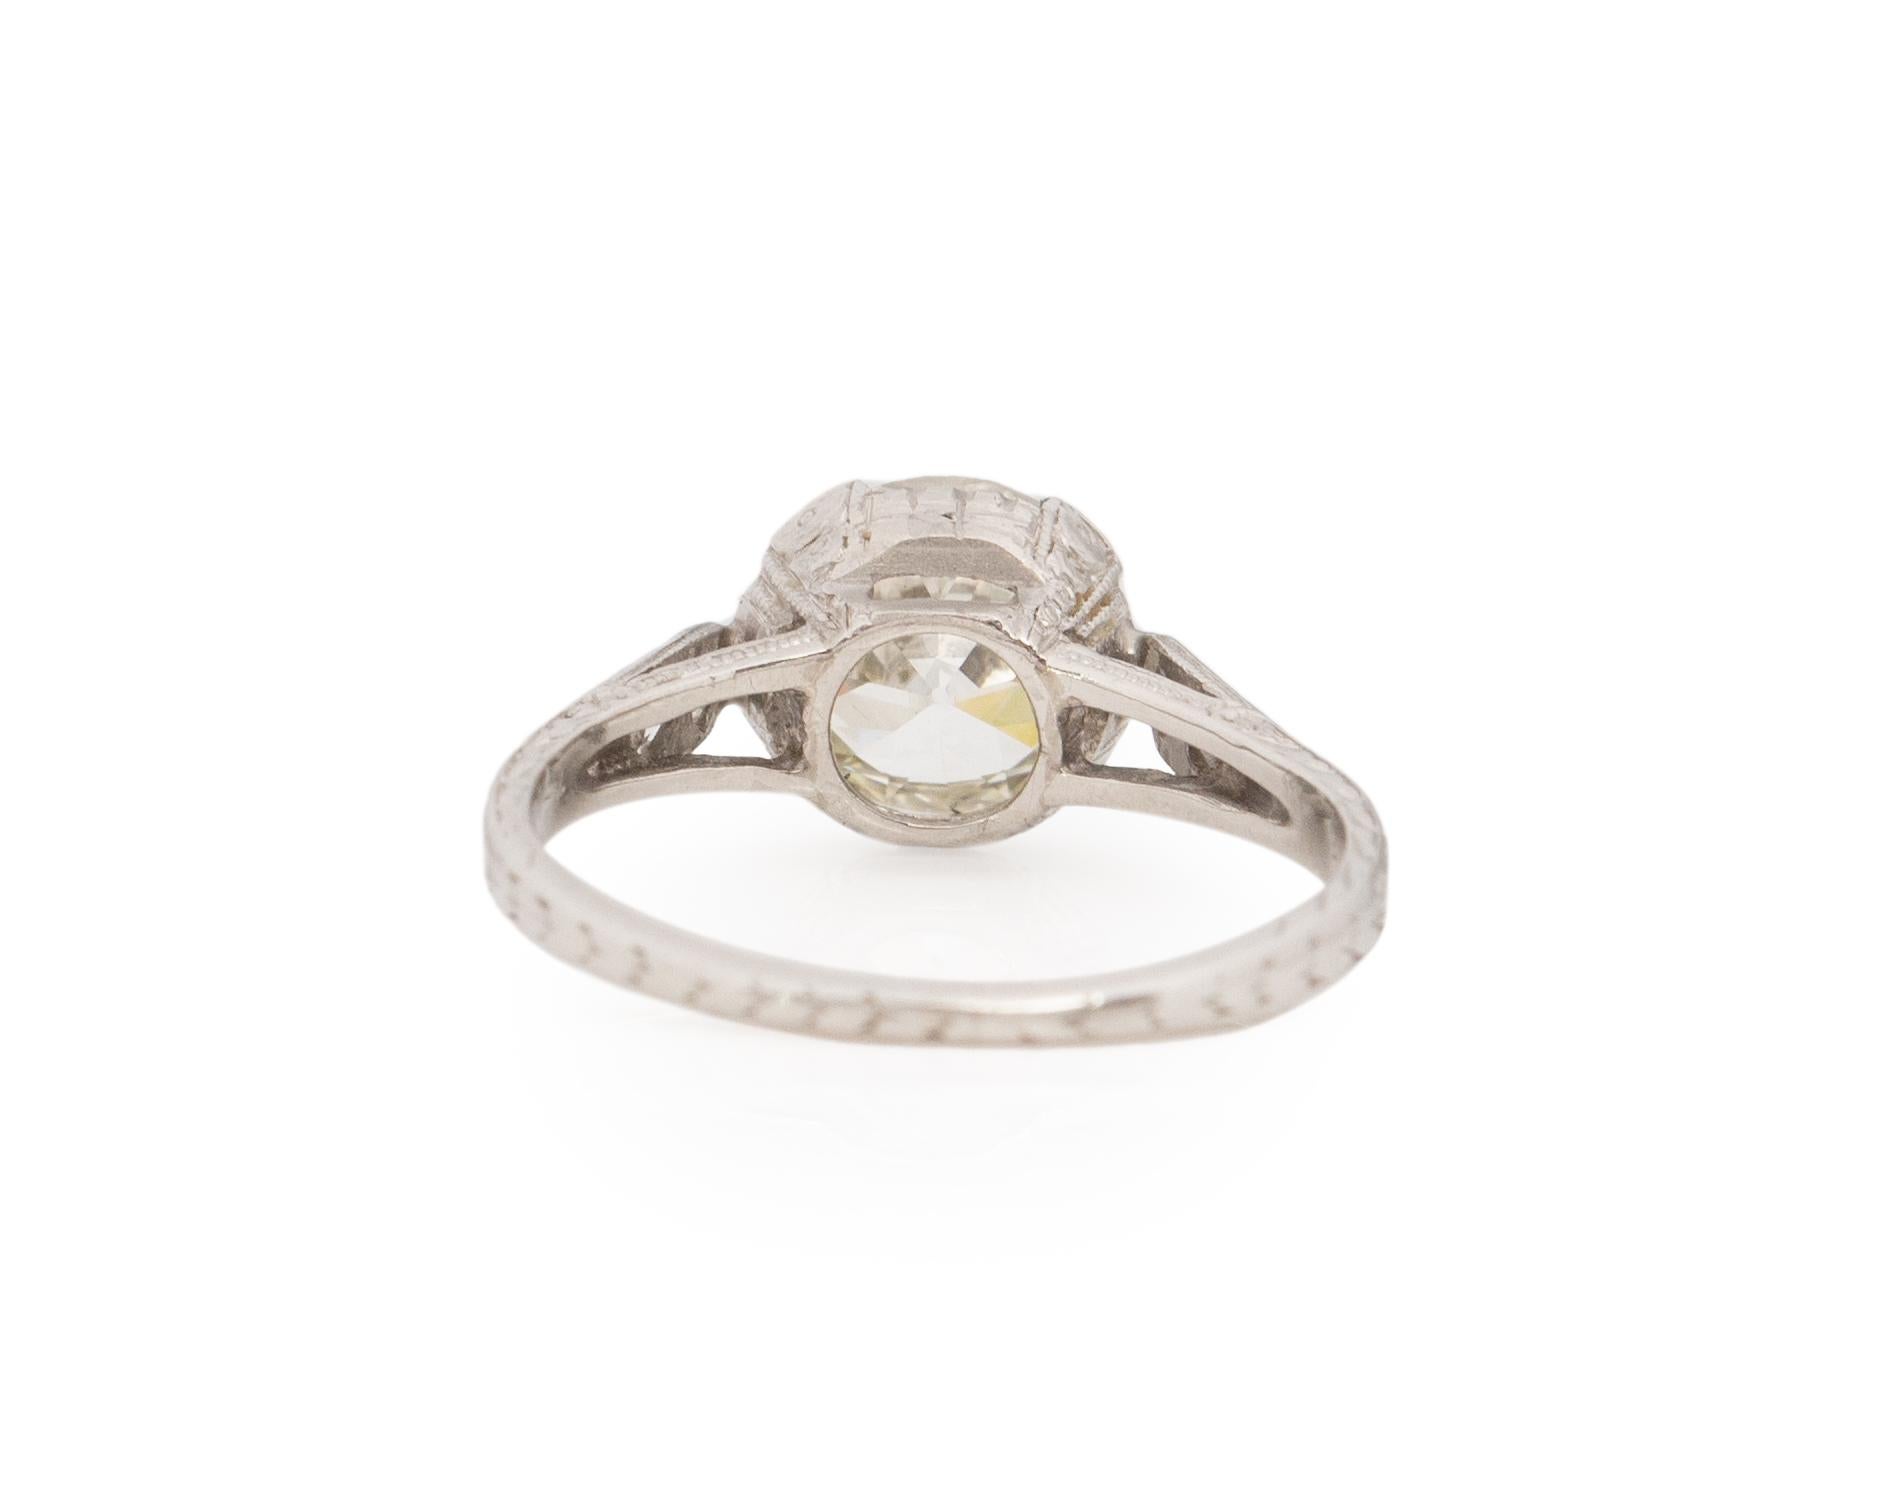 Old European Cut GIA Certified 1.38 Carat Diamond Platinum Engagement Ring